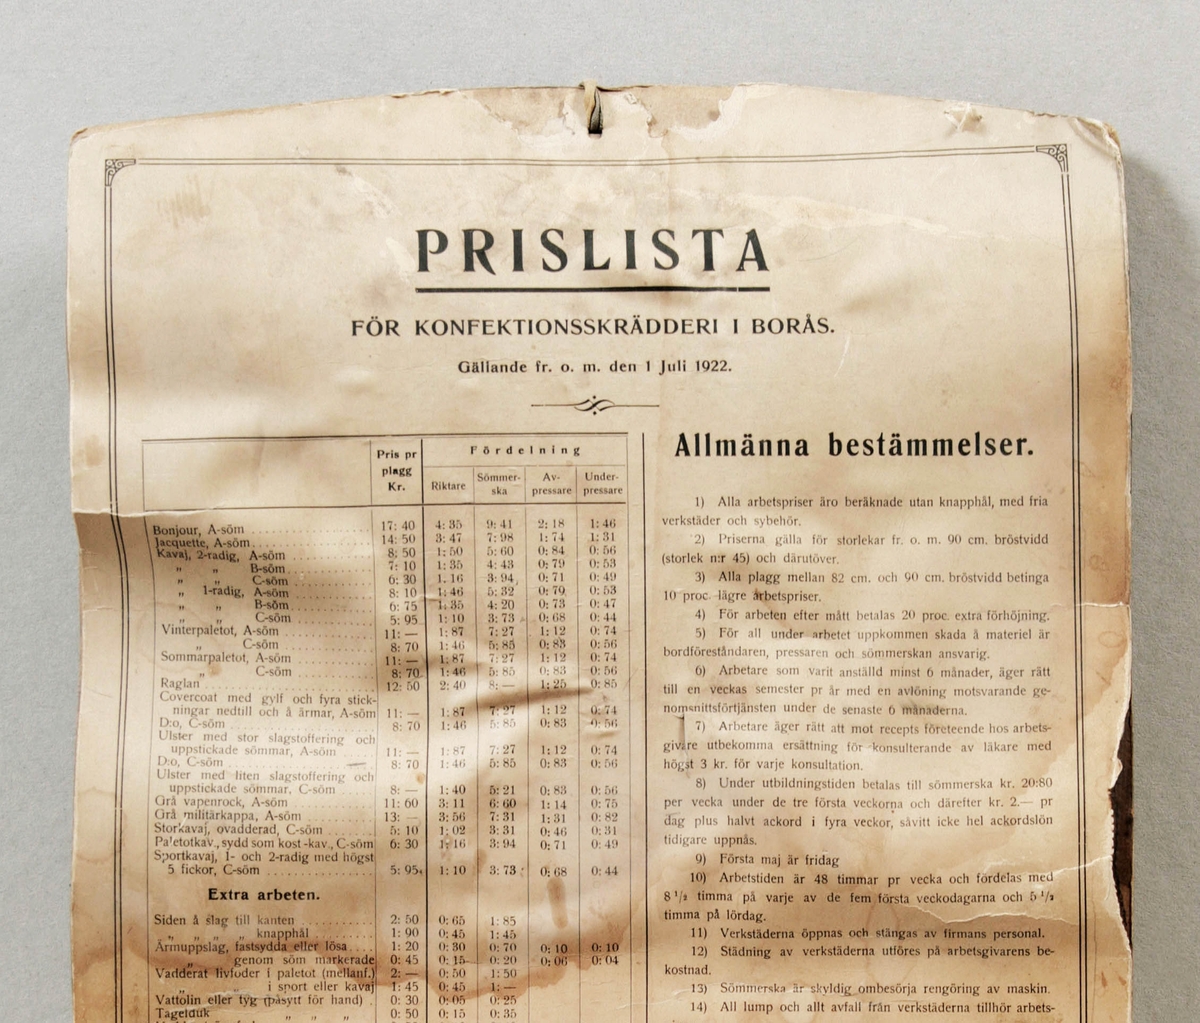 Prislista för konfektionsskrädderi i Borås. Rektangulär. Papper limmat på hård kartong. Med allmänna bestämmelser och gällande från och med 1 juli 1922. Fuktskador.

Funktion: Prisinformation